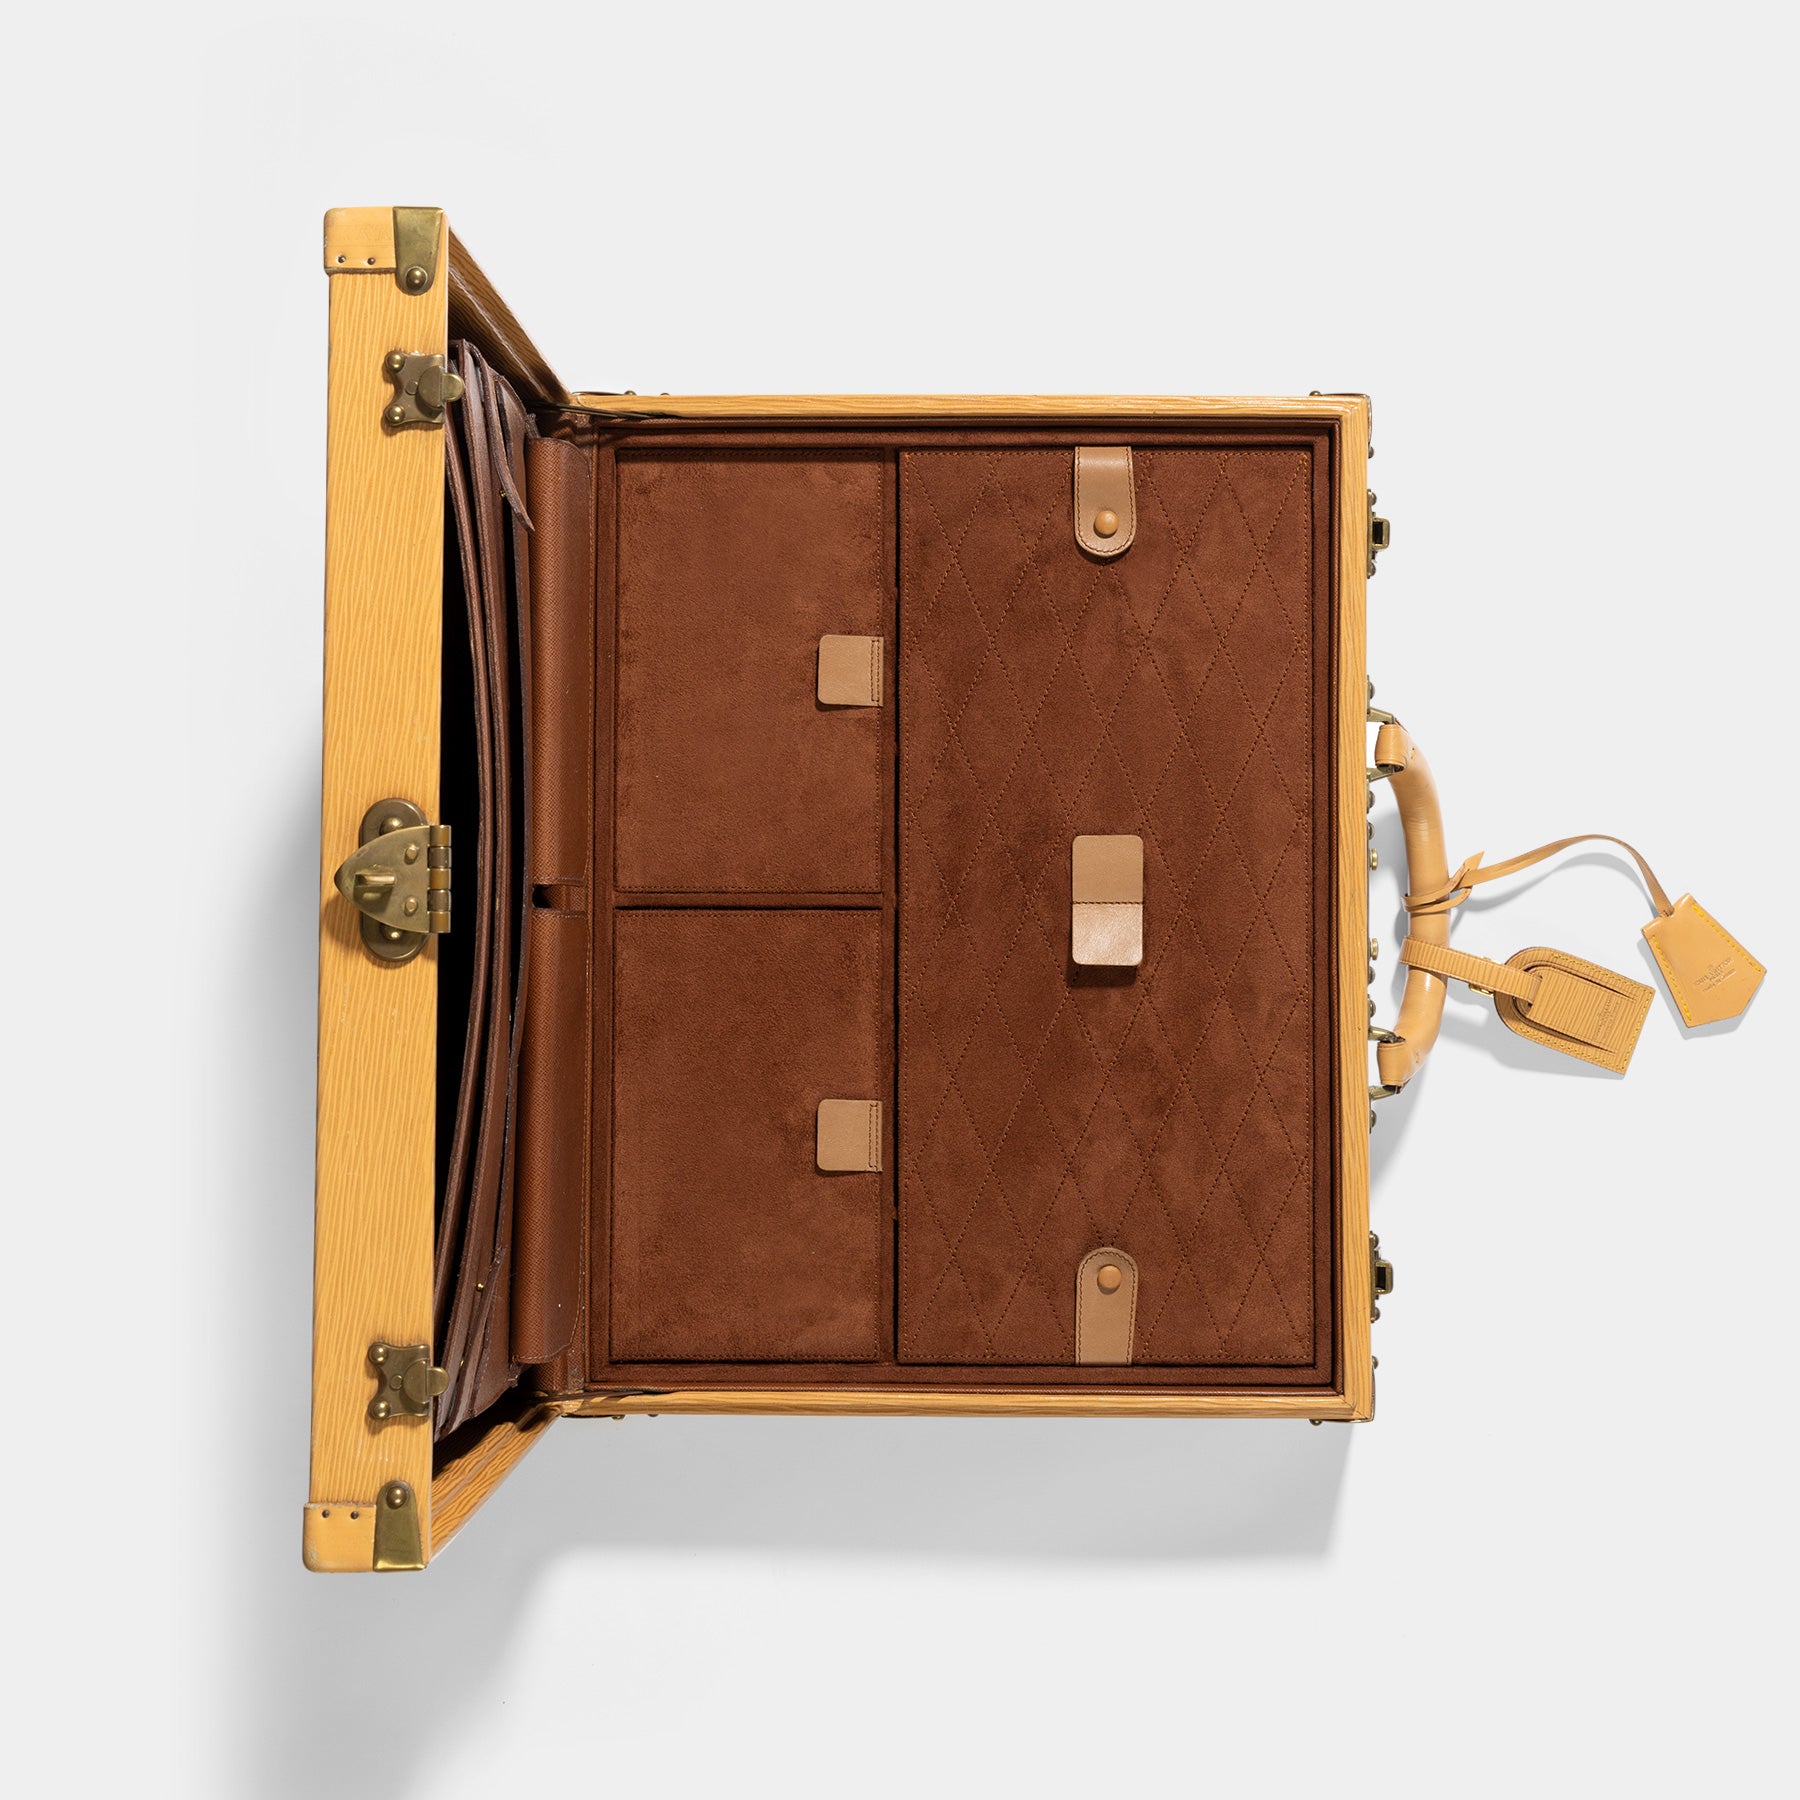 Louis Vuitton Honey Epi Leather Laptop/Briefcase